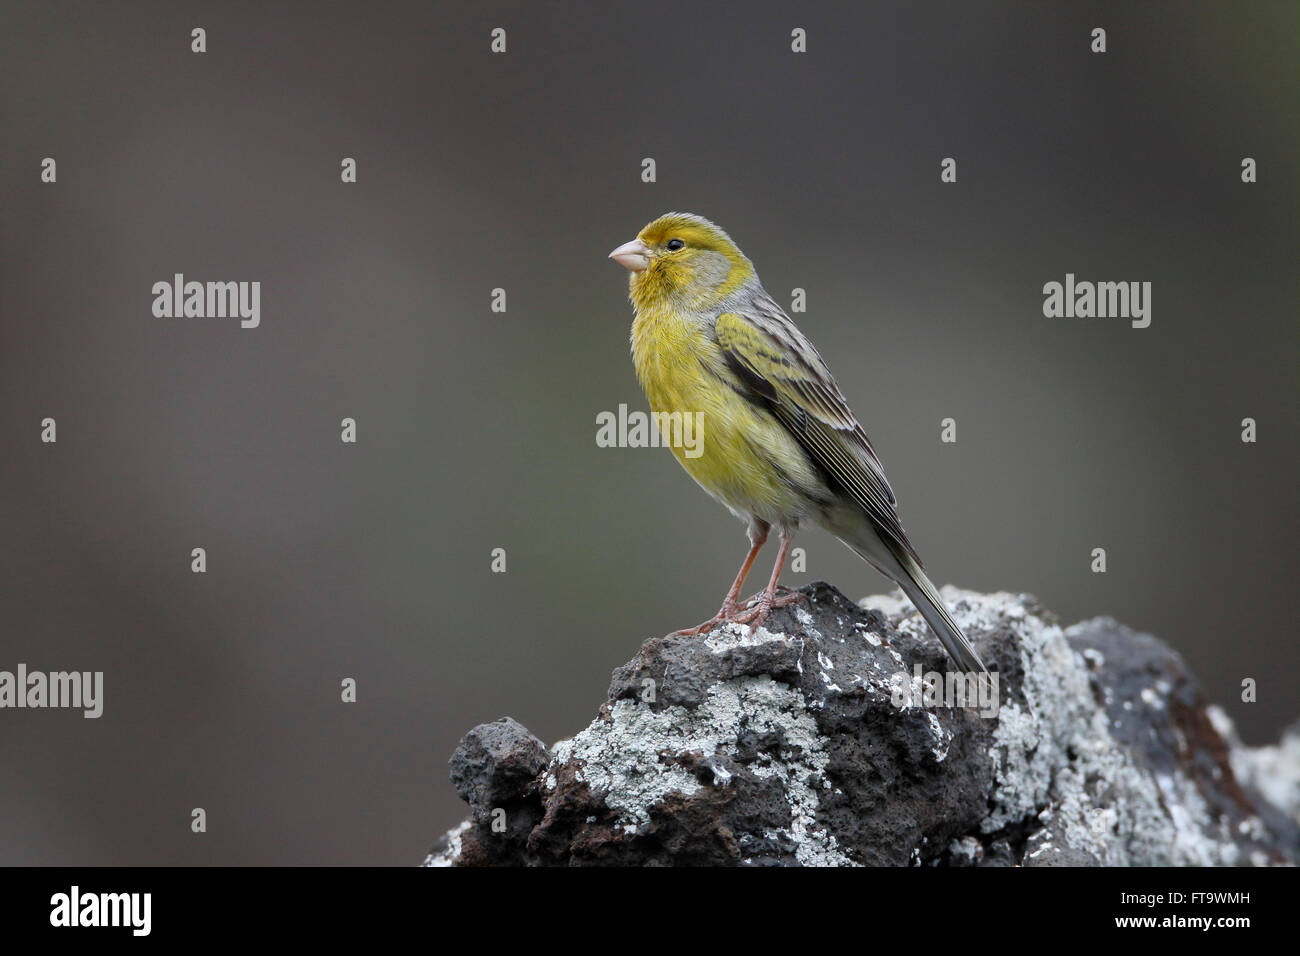 Atlántico canario, Serinus canaria, única ave en roca, Madeira, marzo de 2016 Foto de stock